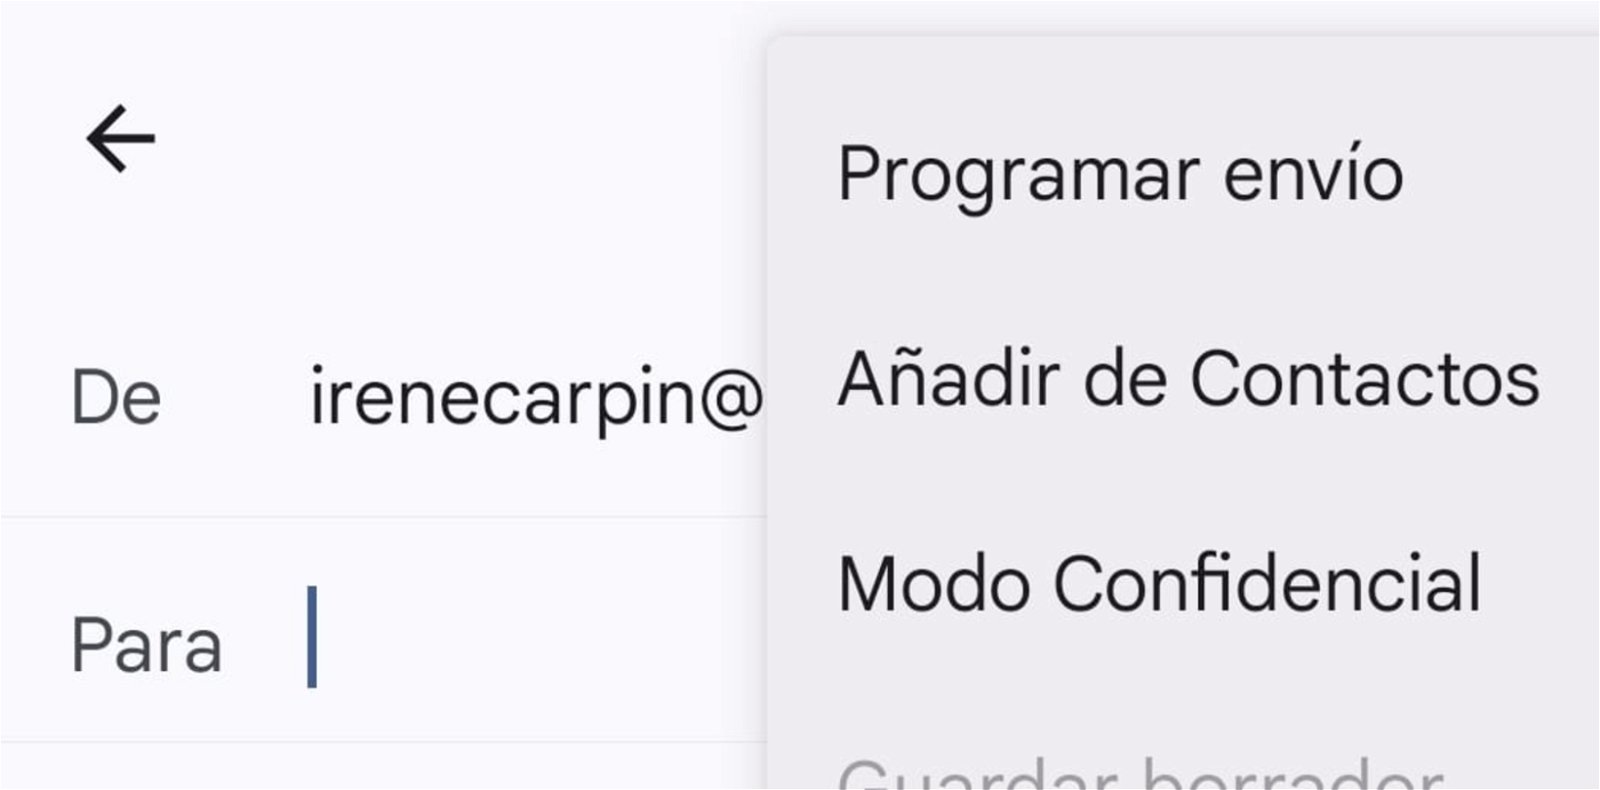 Botón para programar envío en la app de Gmail